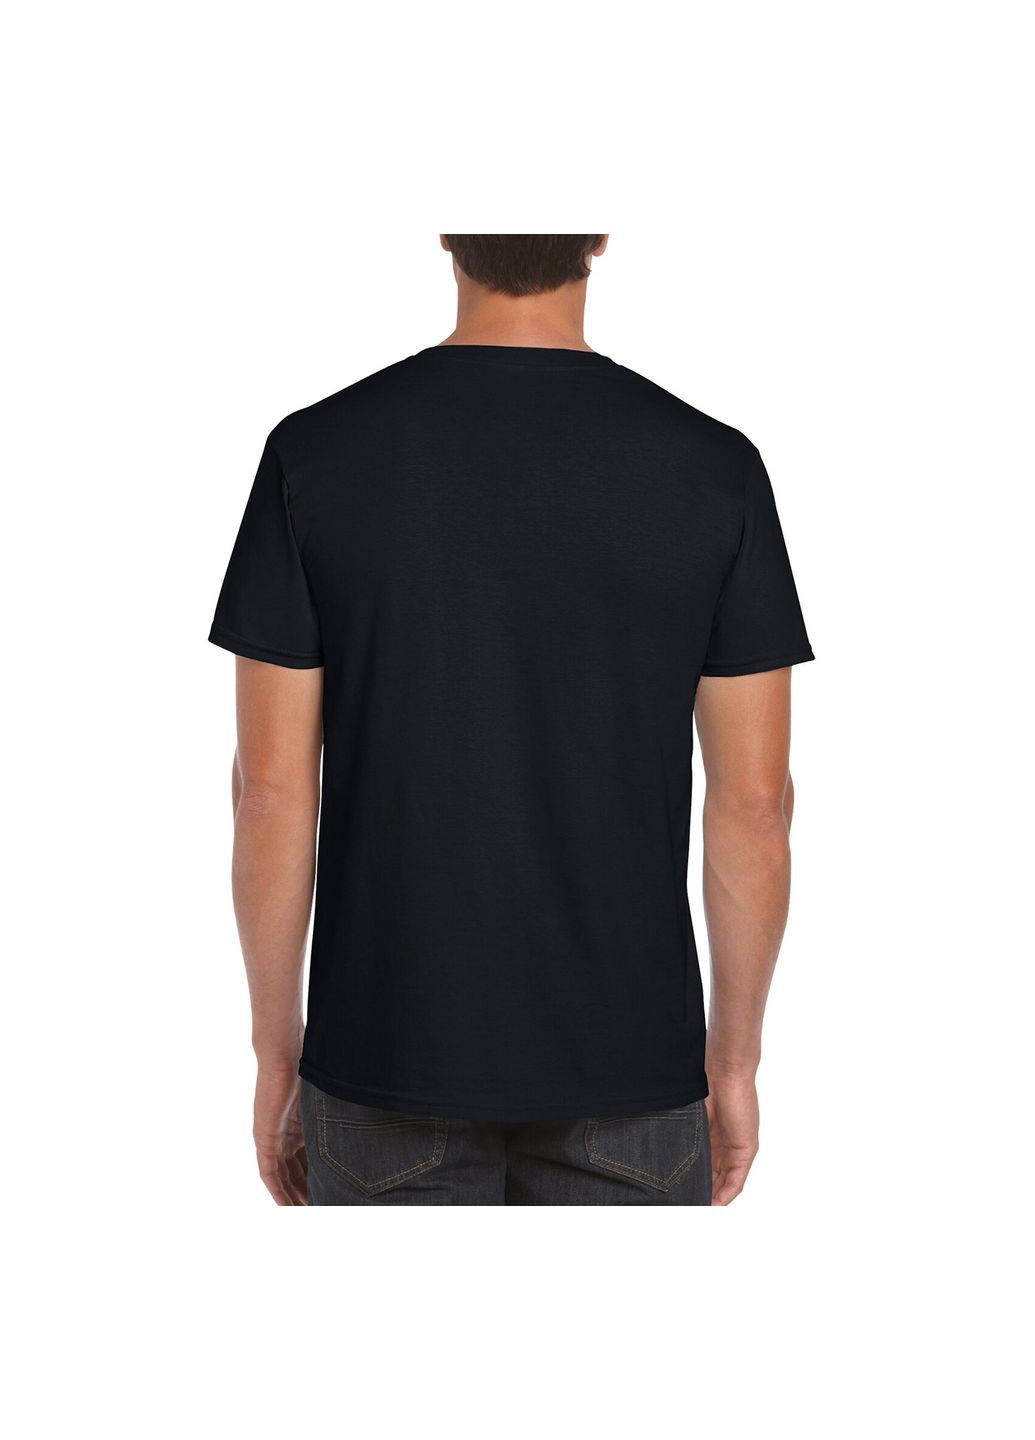 Черная футболка мужская базовая однотонная черная 64000-426c с коротким рукавом Gildan Softstyle